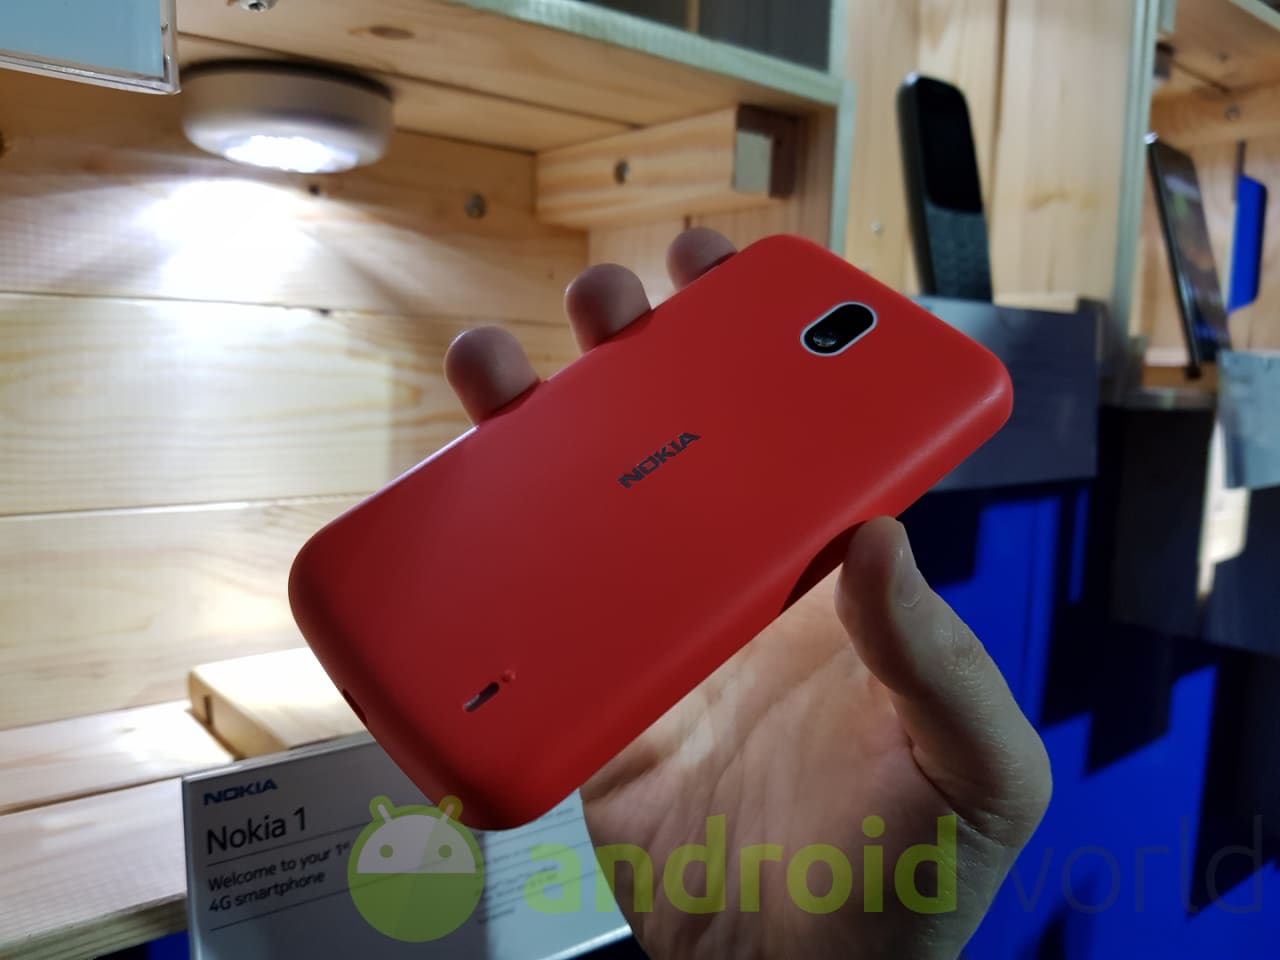 Nokia 1 ufficiale con Android Go e le cover intercambiabili (anteprima)